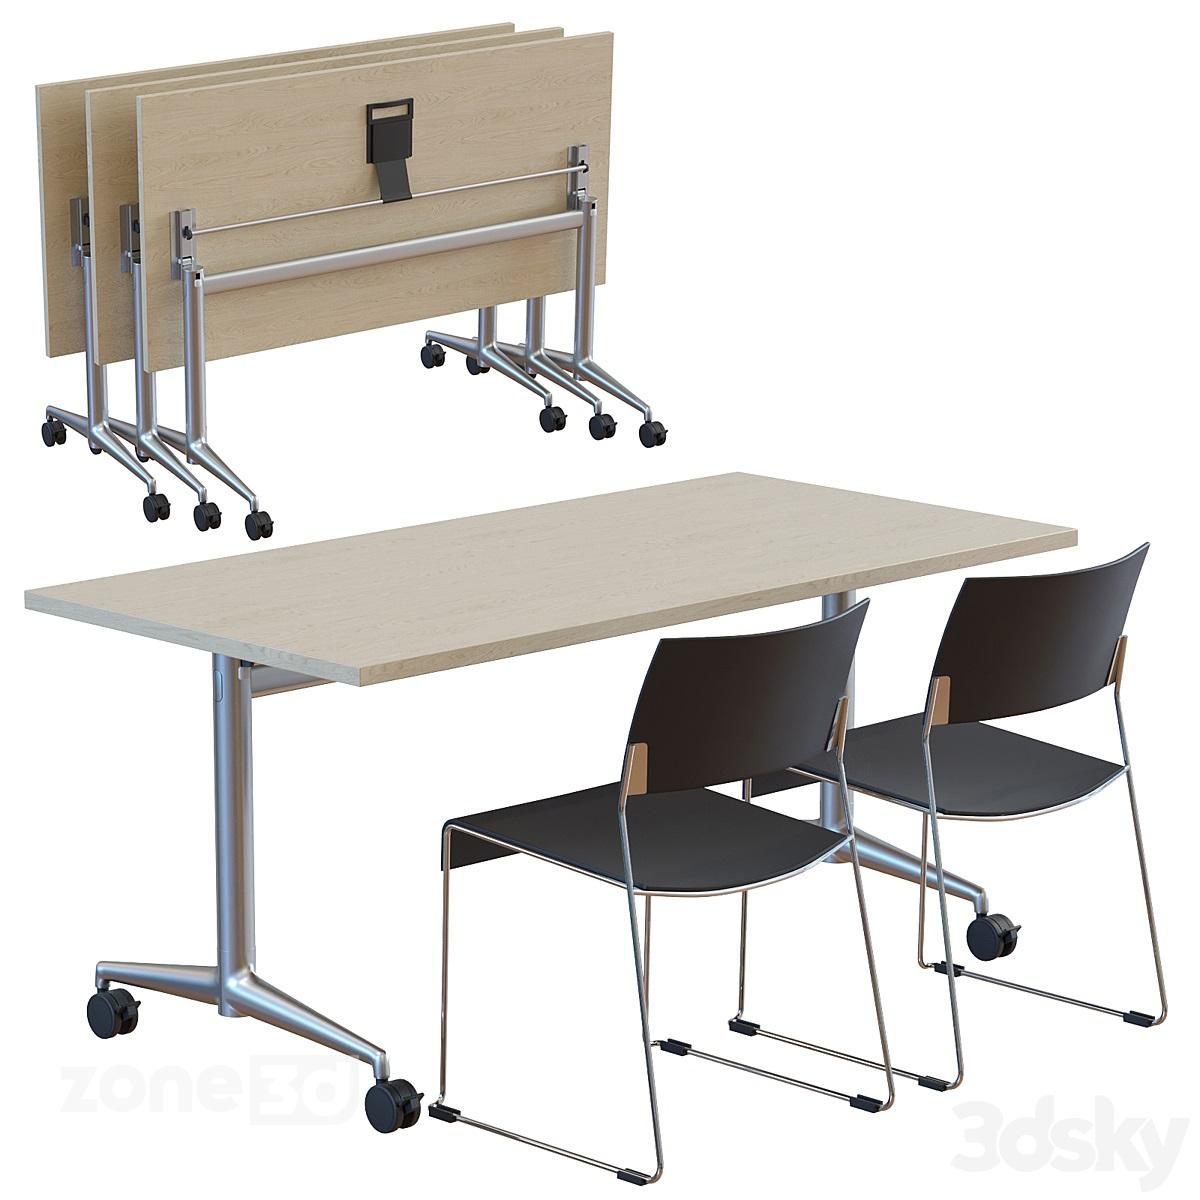 آبجکت میز چوبی مدرن اداری با پایه فلزی چرخدار و صندلی چوبی مدل Fina fold 6990